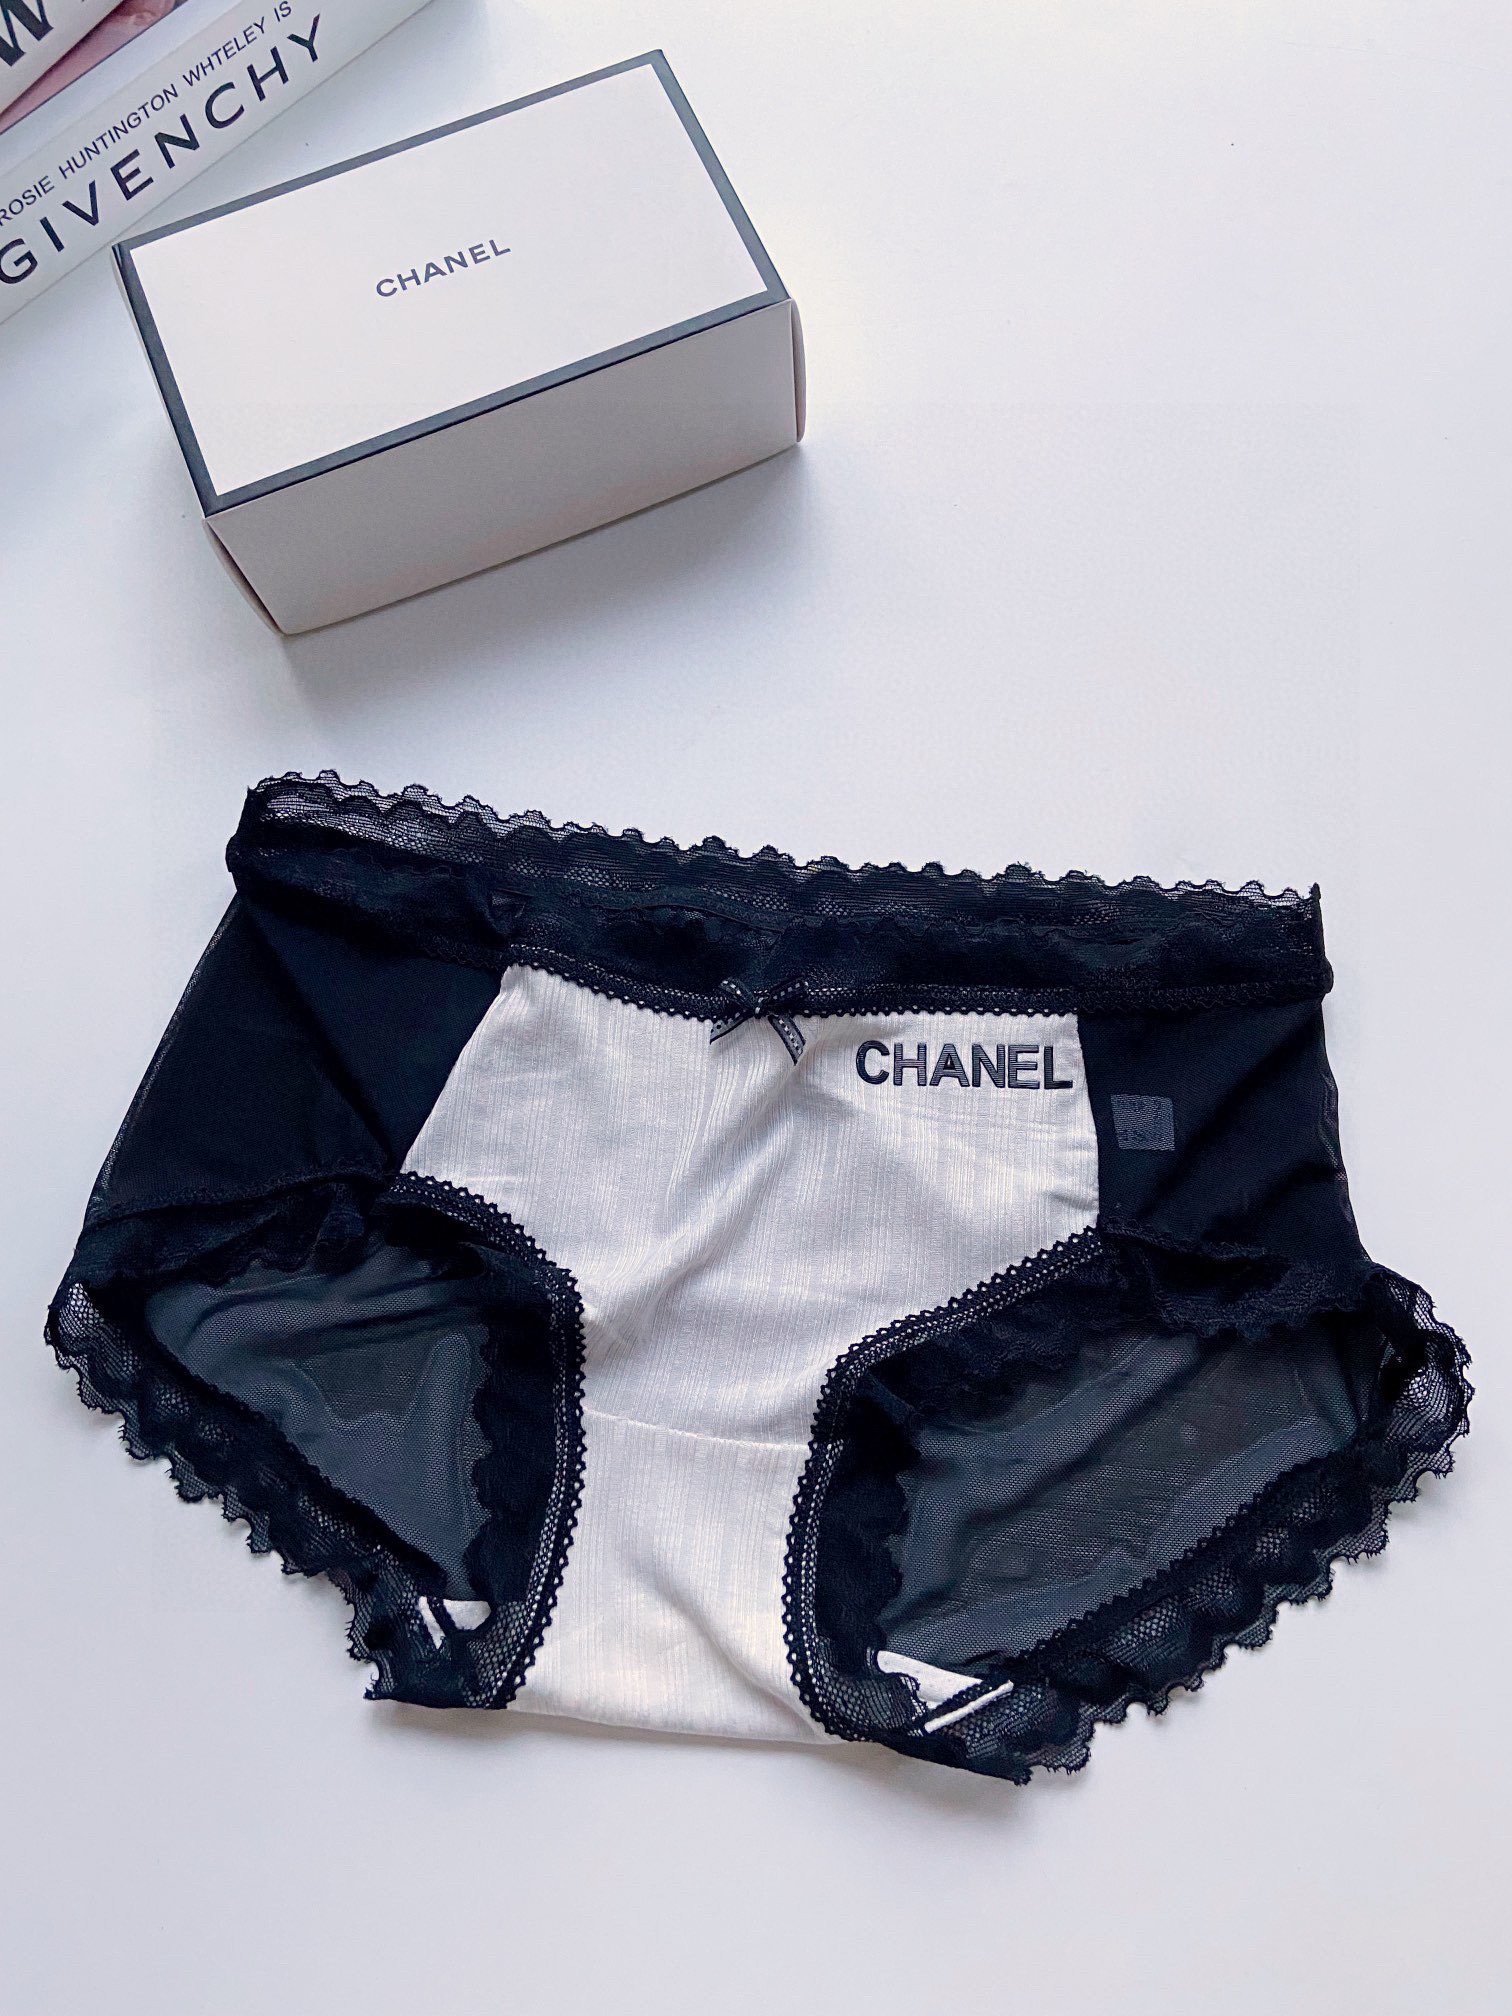 配包装一盒2件建议95斤-135斤Chanel香奈儿经典字母logo高档透气棉拼接网纱性感中低腰内裤蕾丝